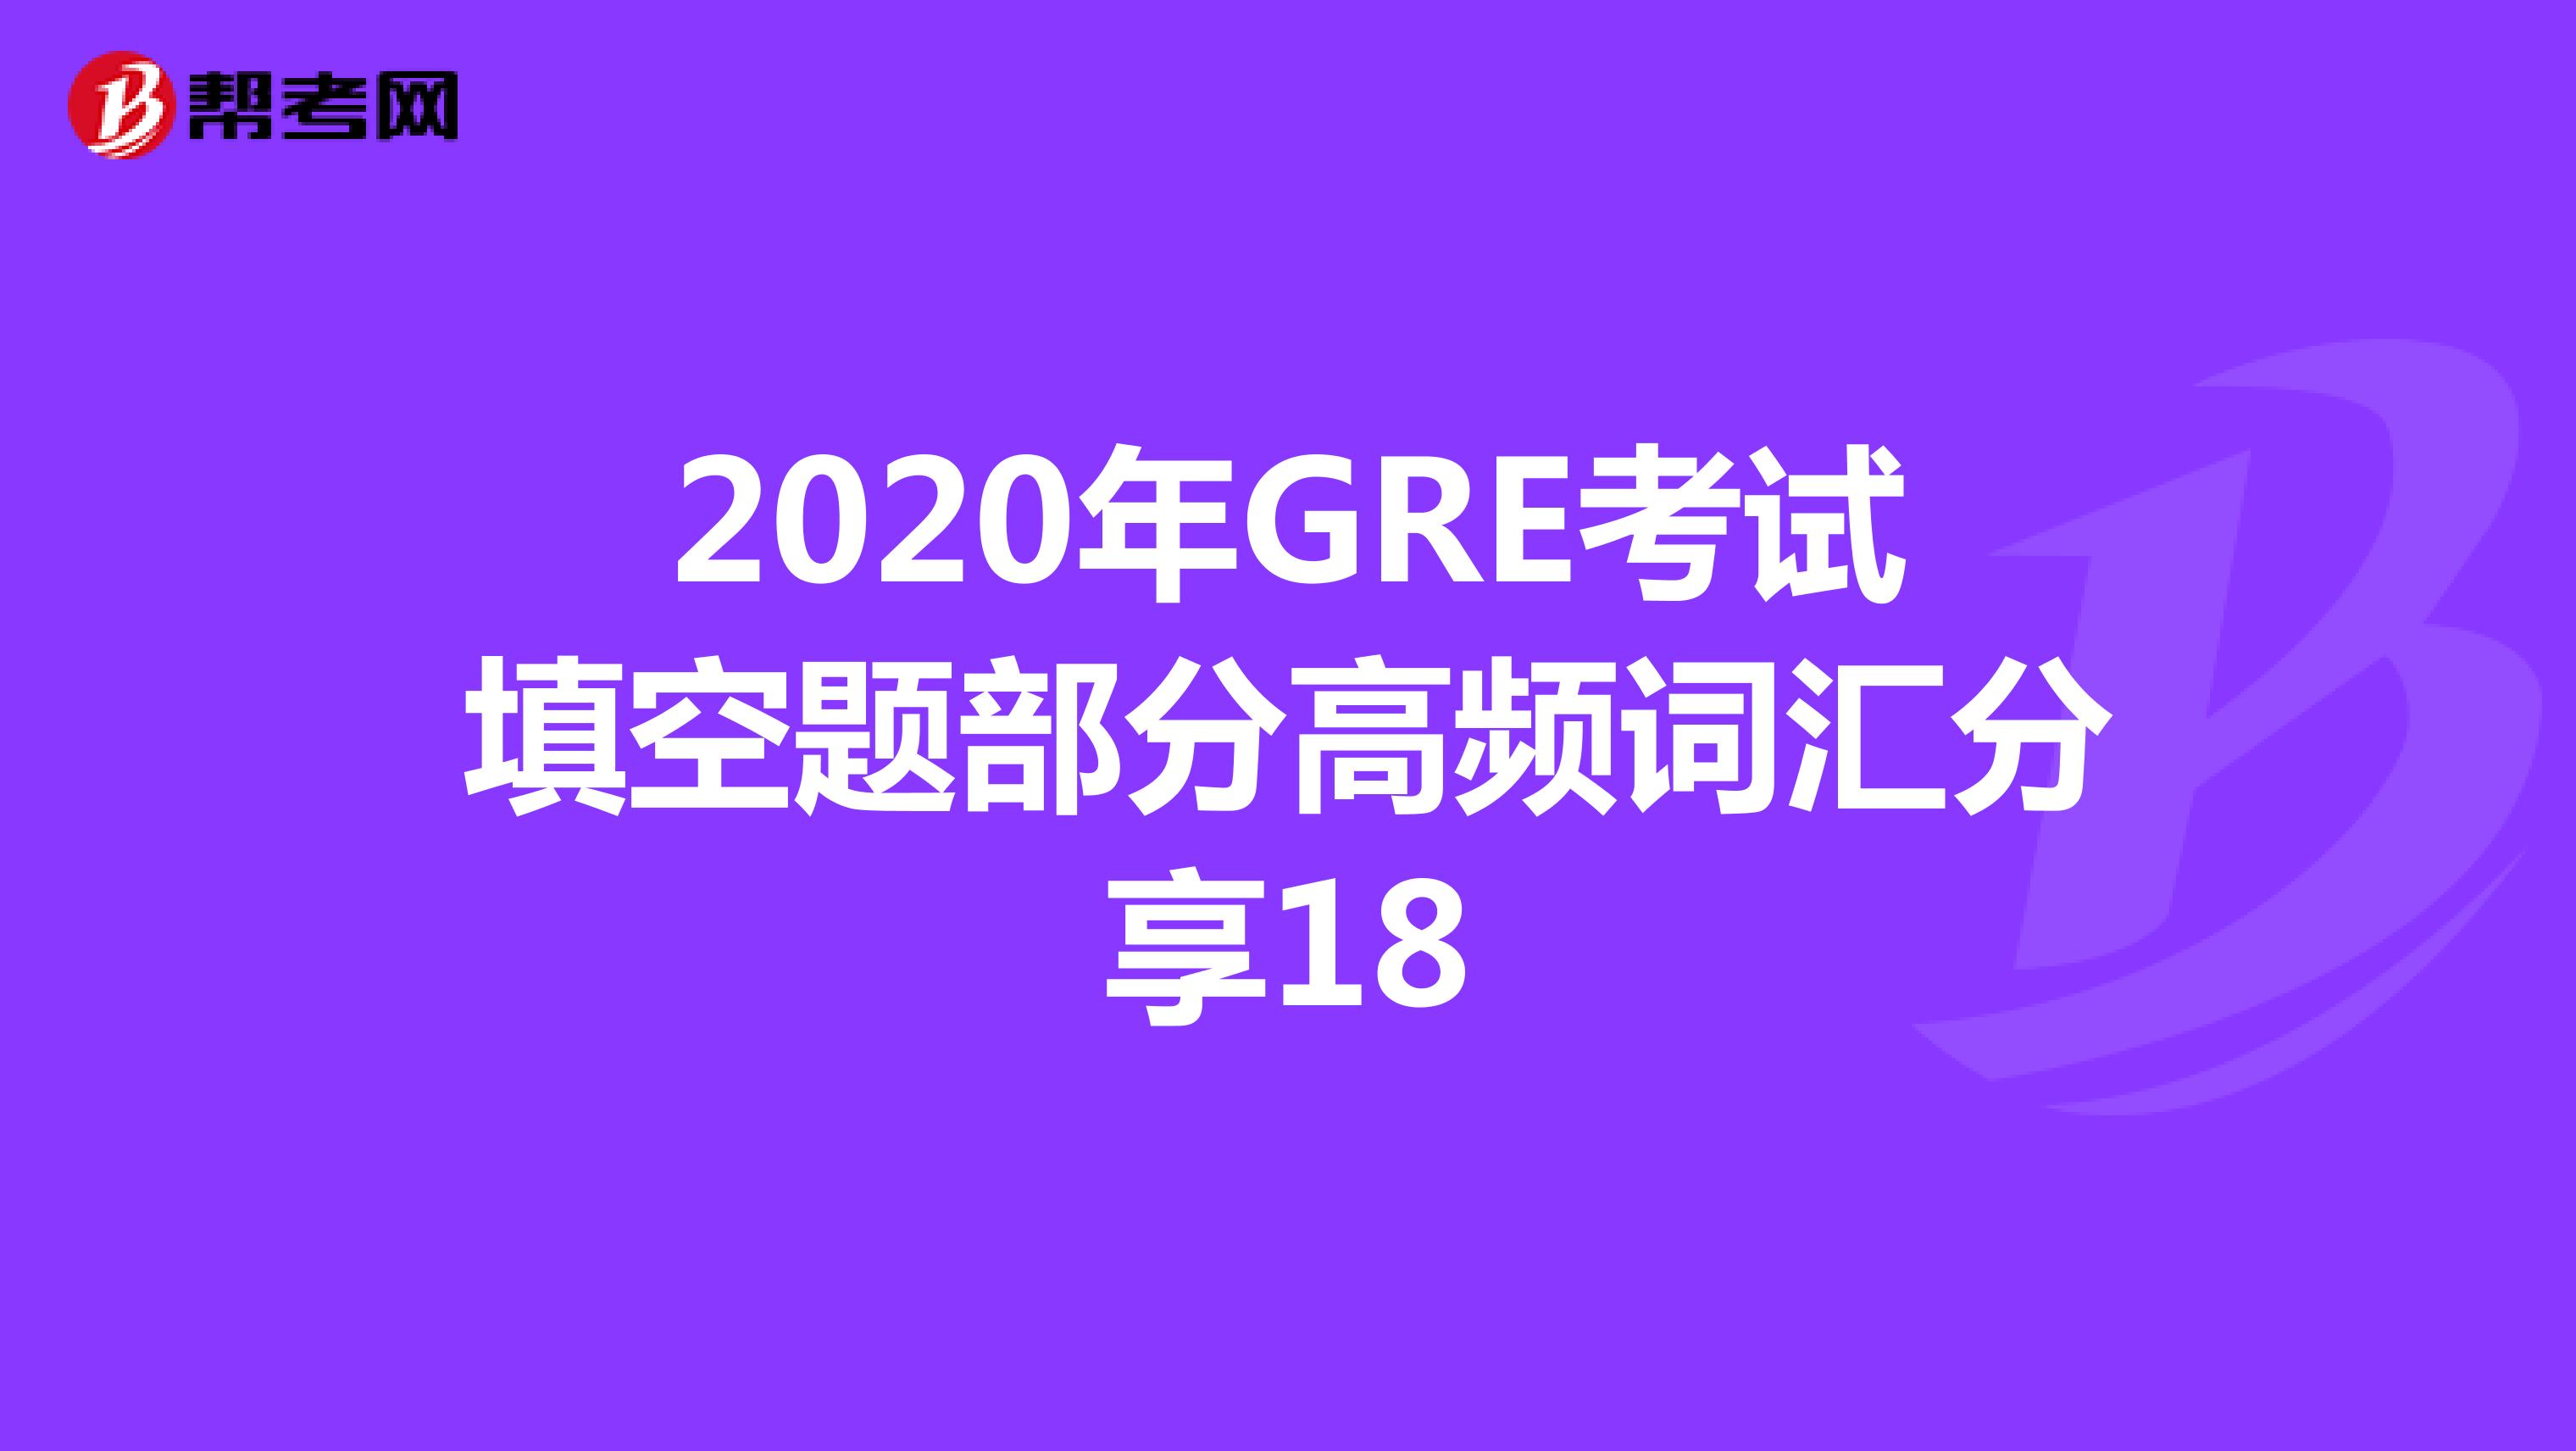 2020年GRE考试填空题部分高频词汇分享18